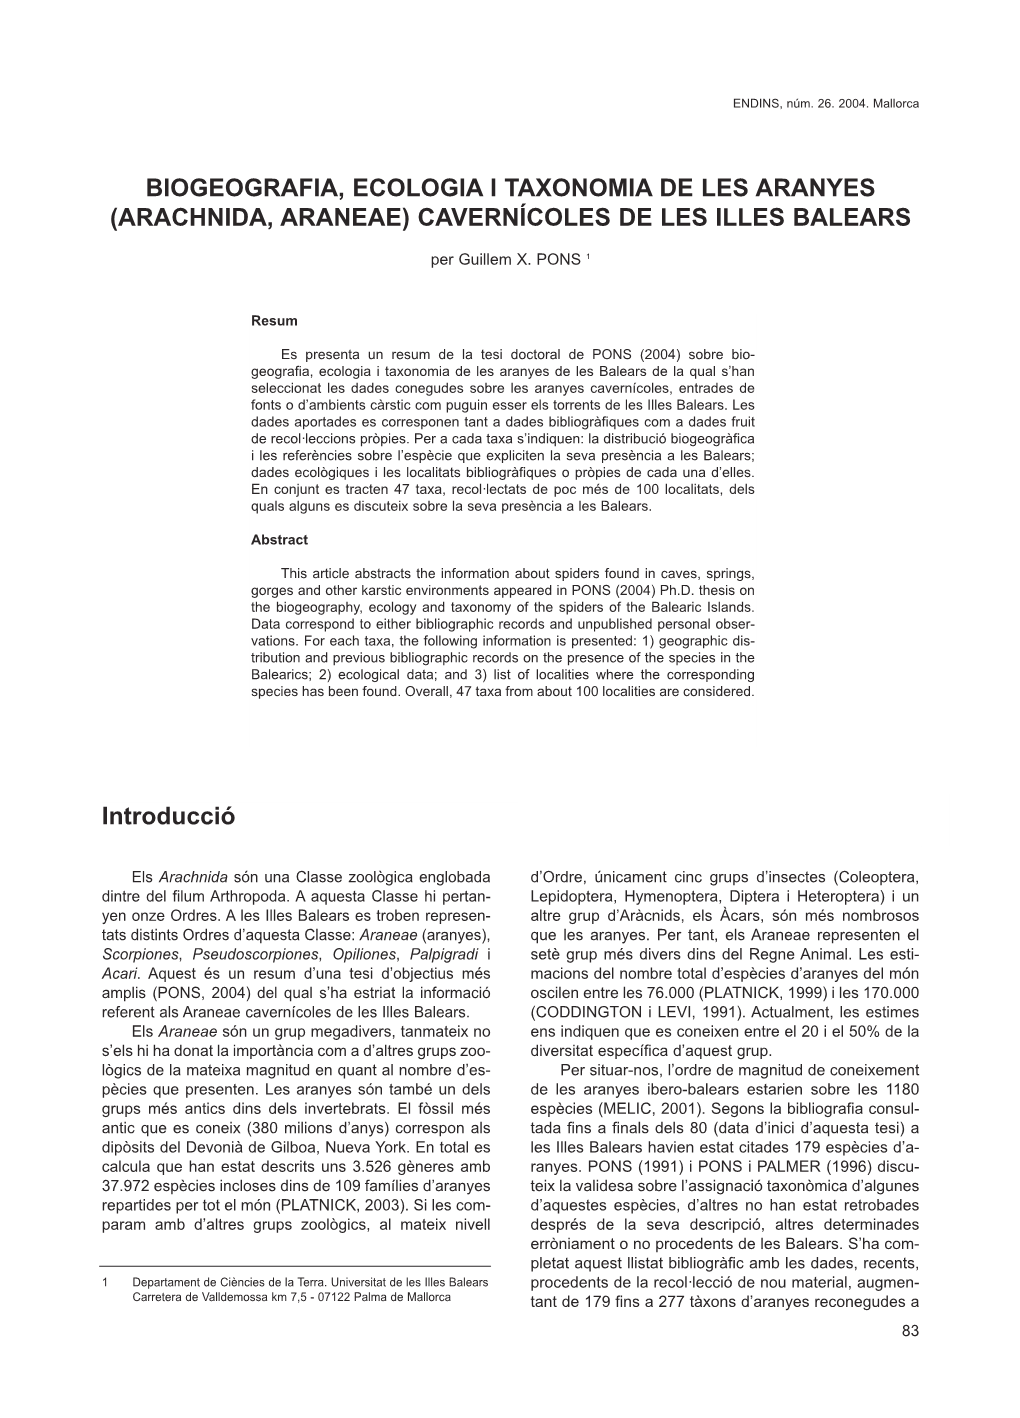 Biogeografia, Ecologia I Taxonomia De Les Aranyes (Arachnida, Araneae) Cavernêcoles De Les Illes Balears